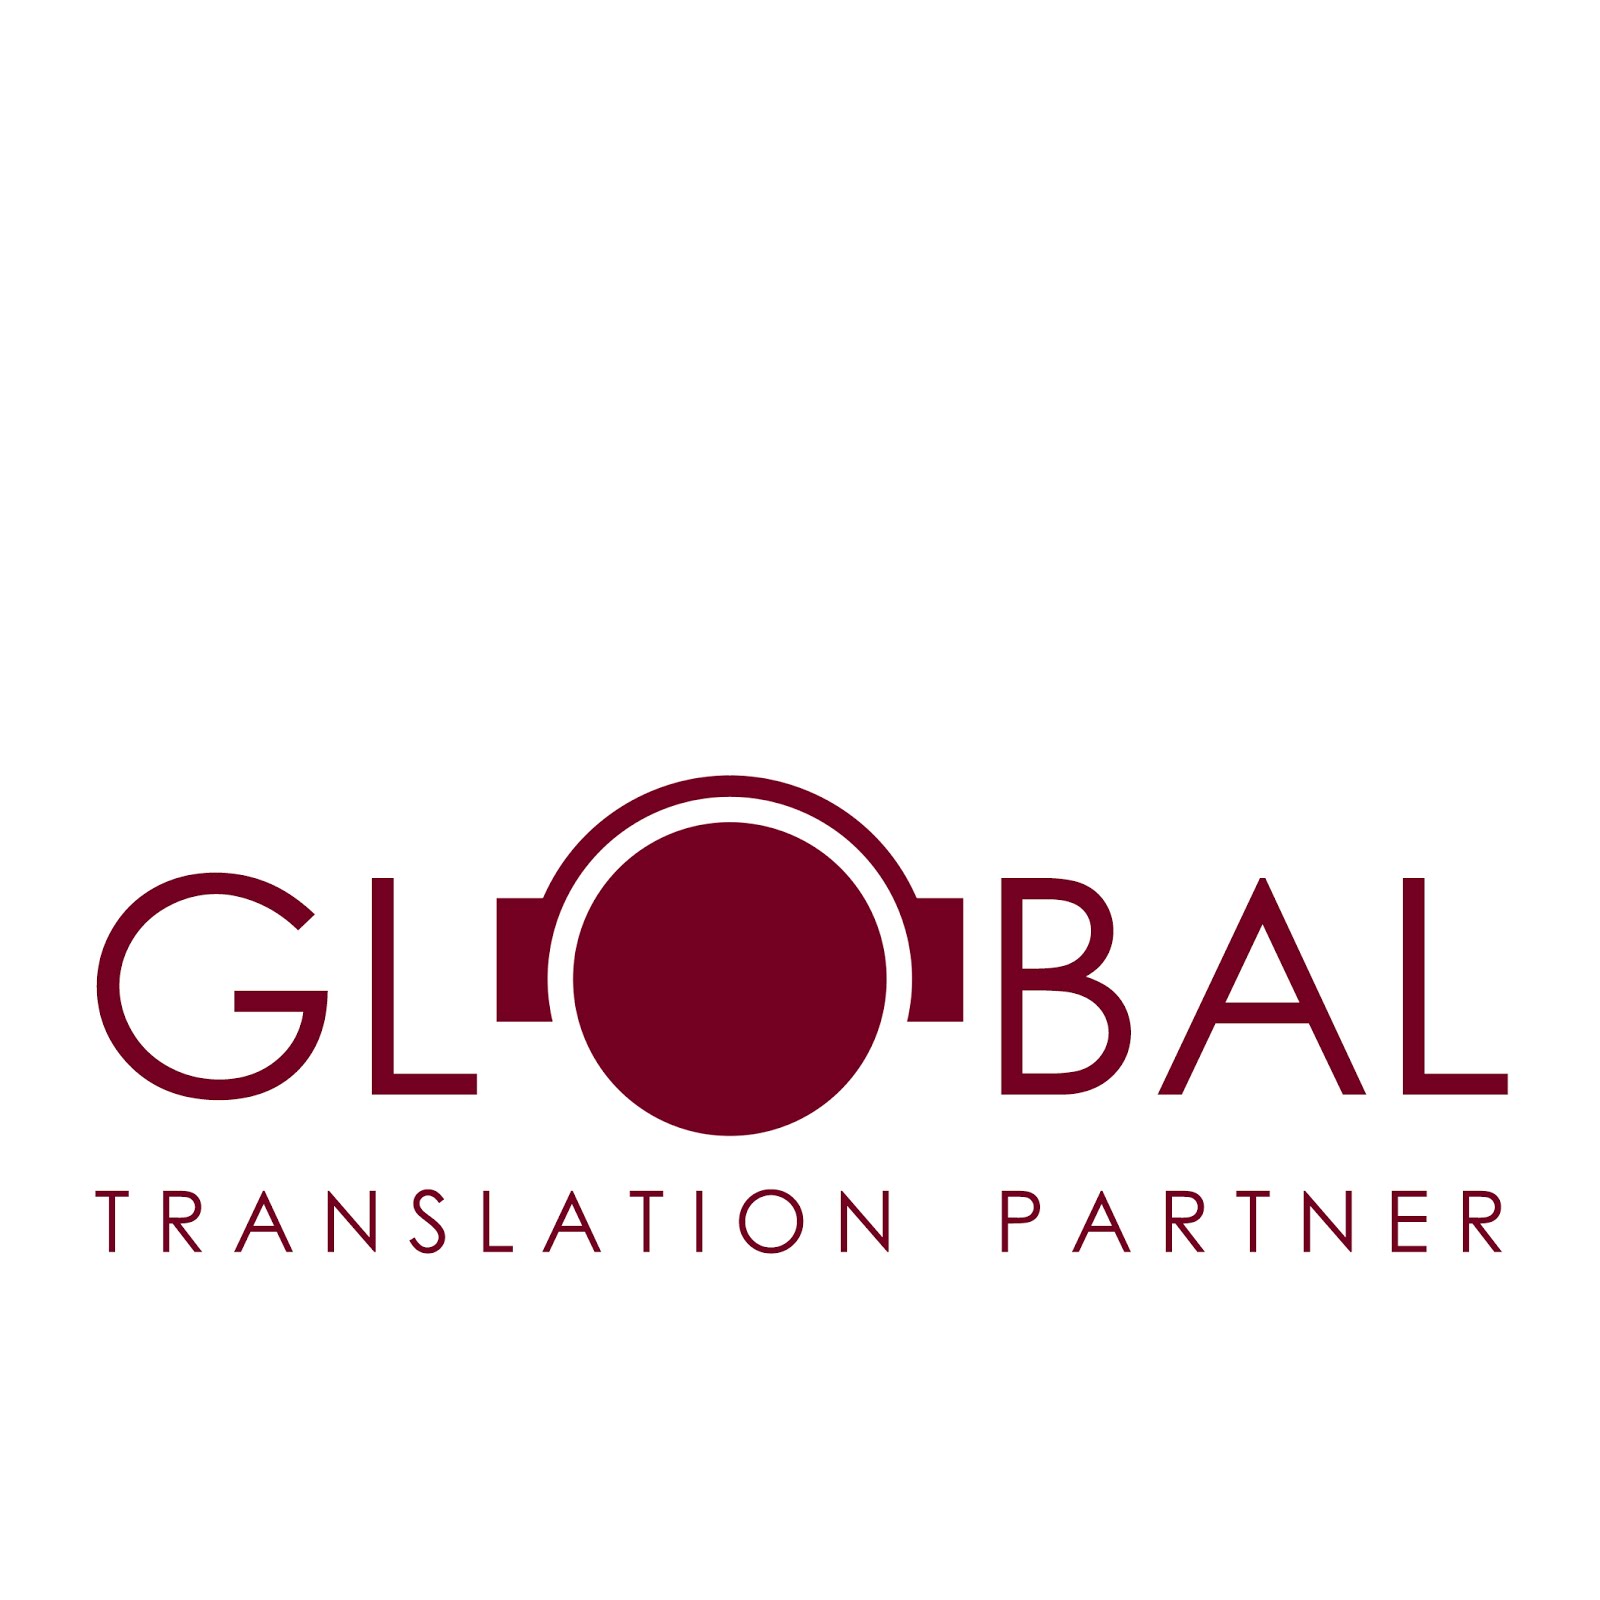 Global Translation Partner